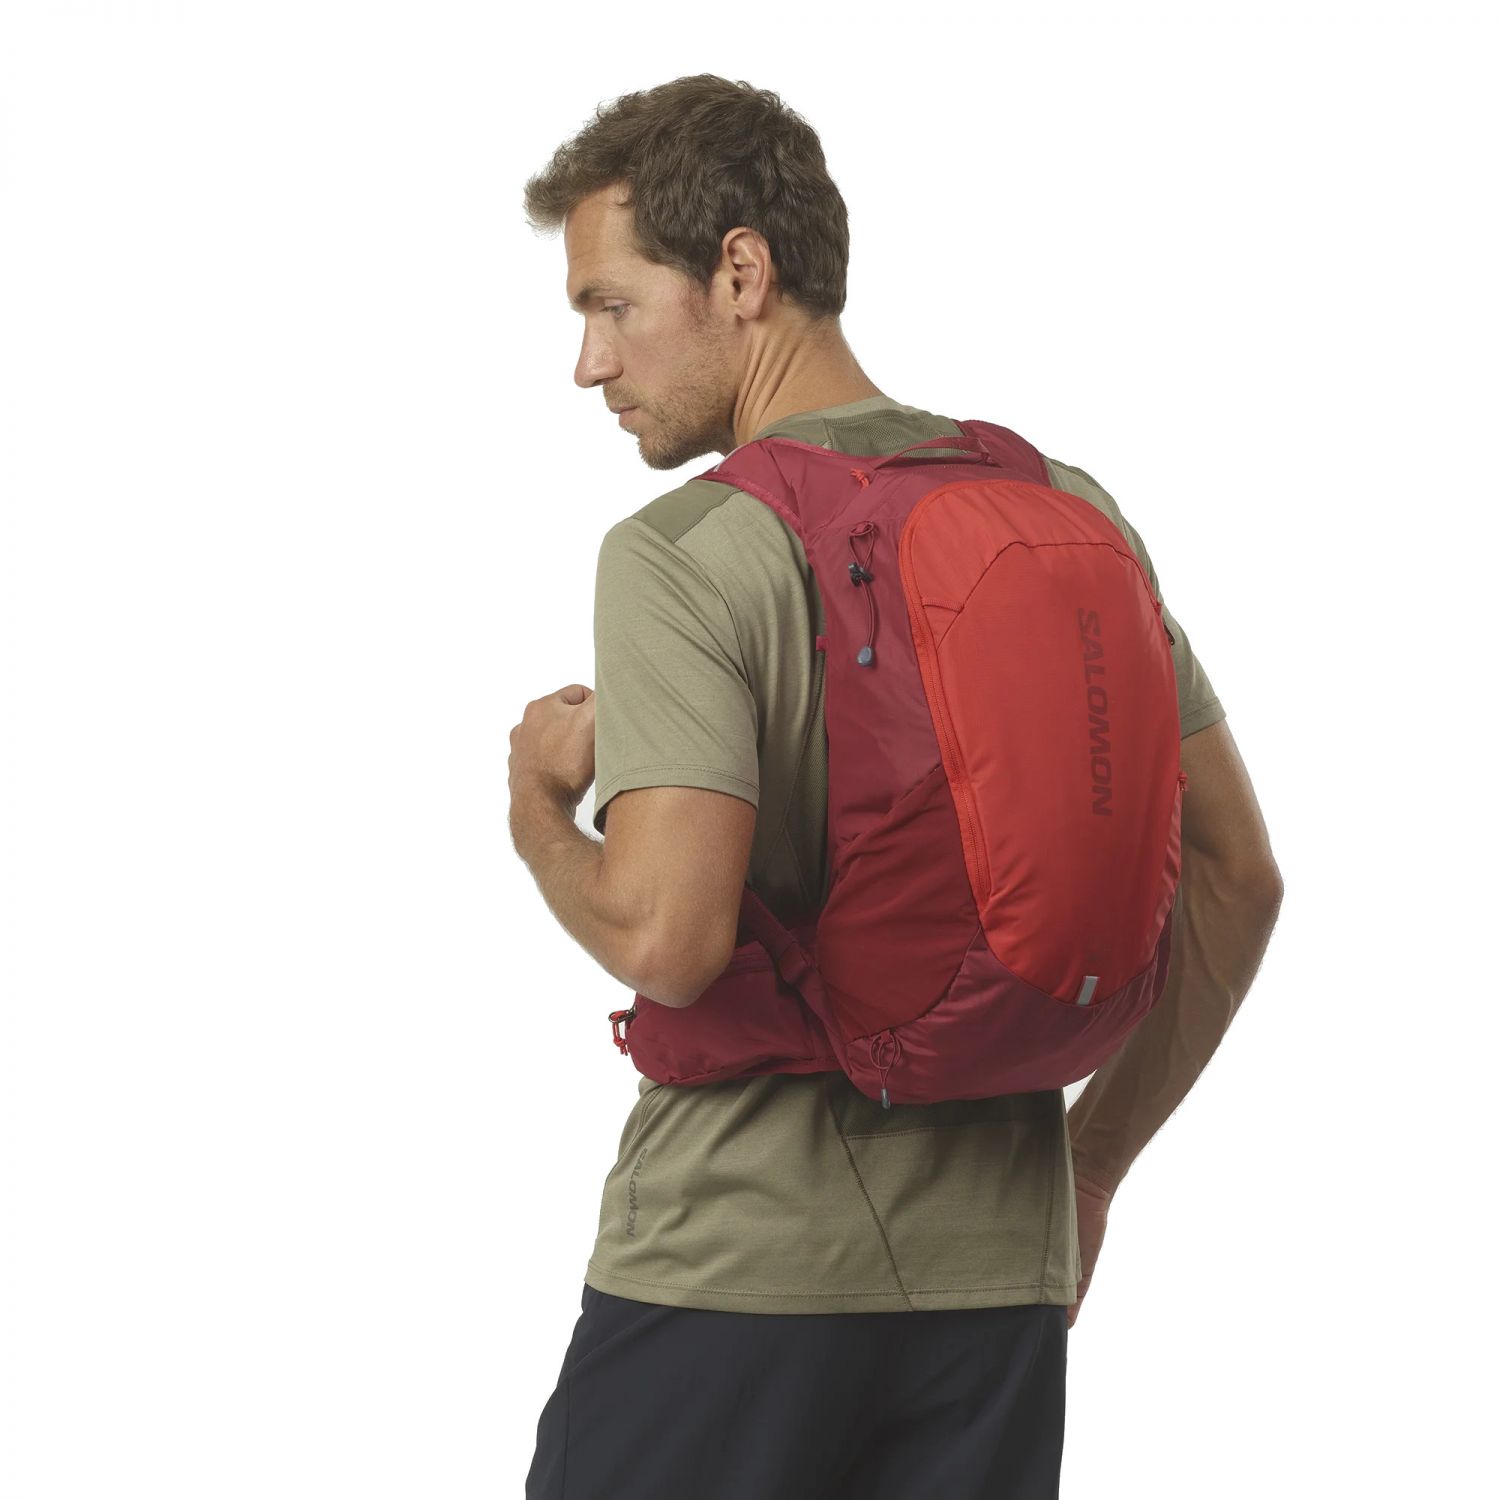 Salomon Trailblazer 20, backpack, aurora orange/biking red